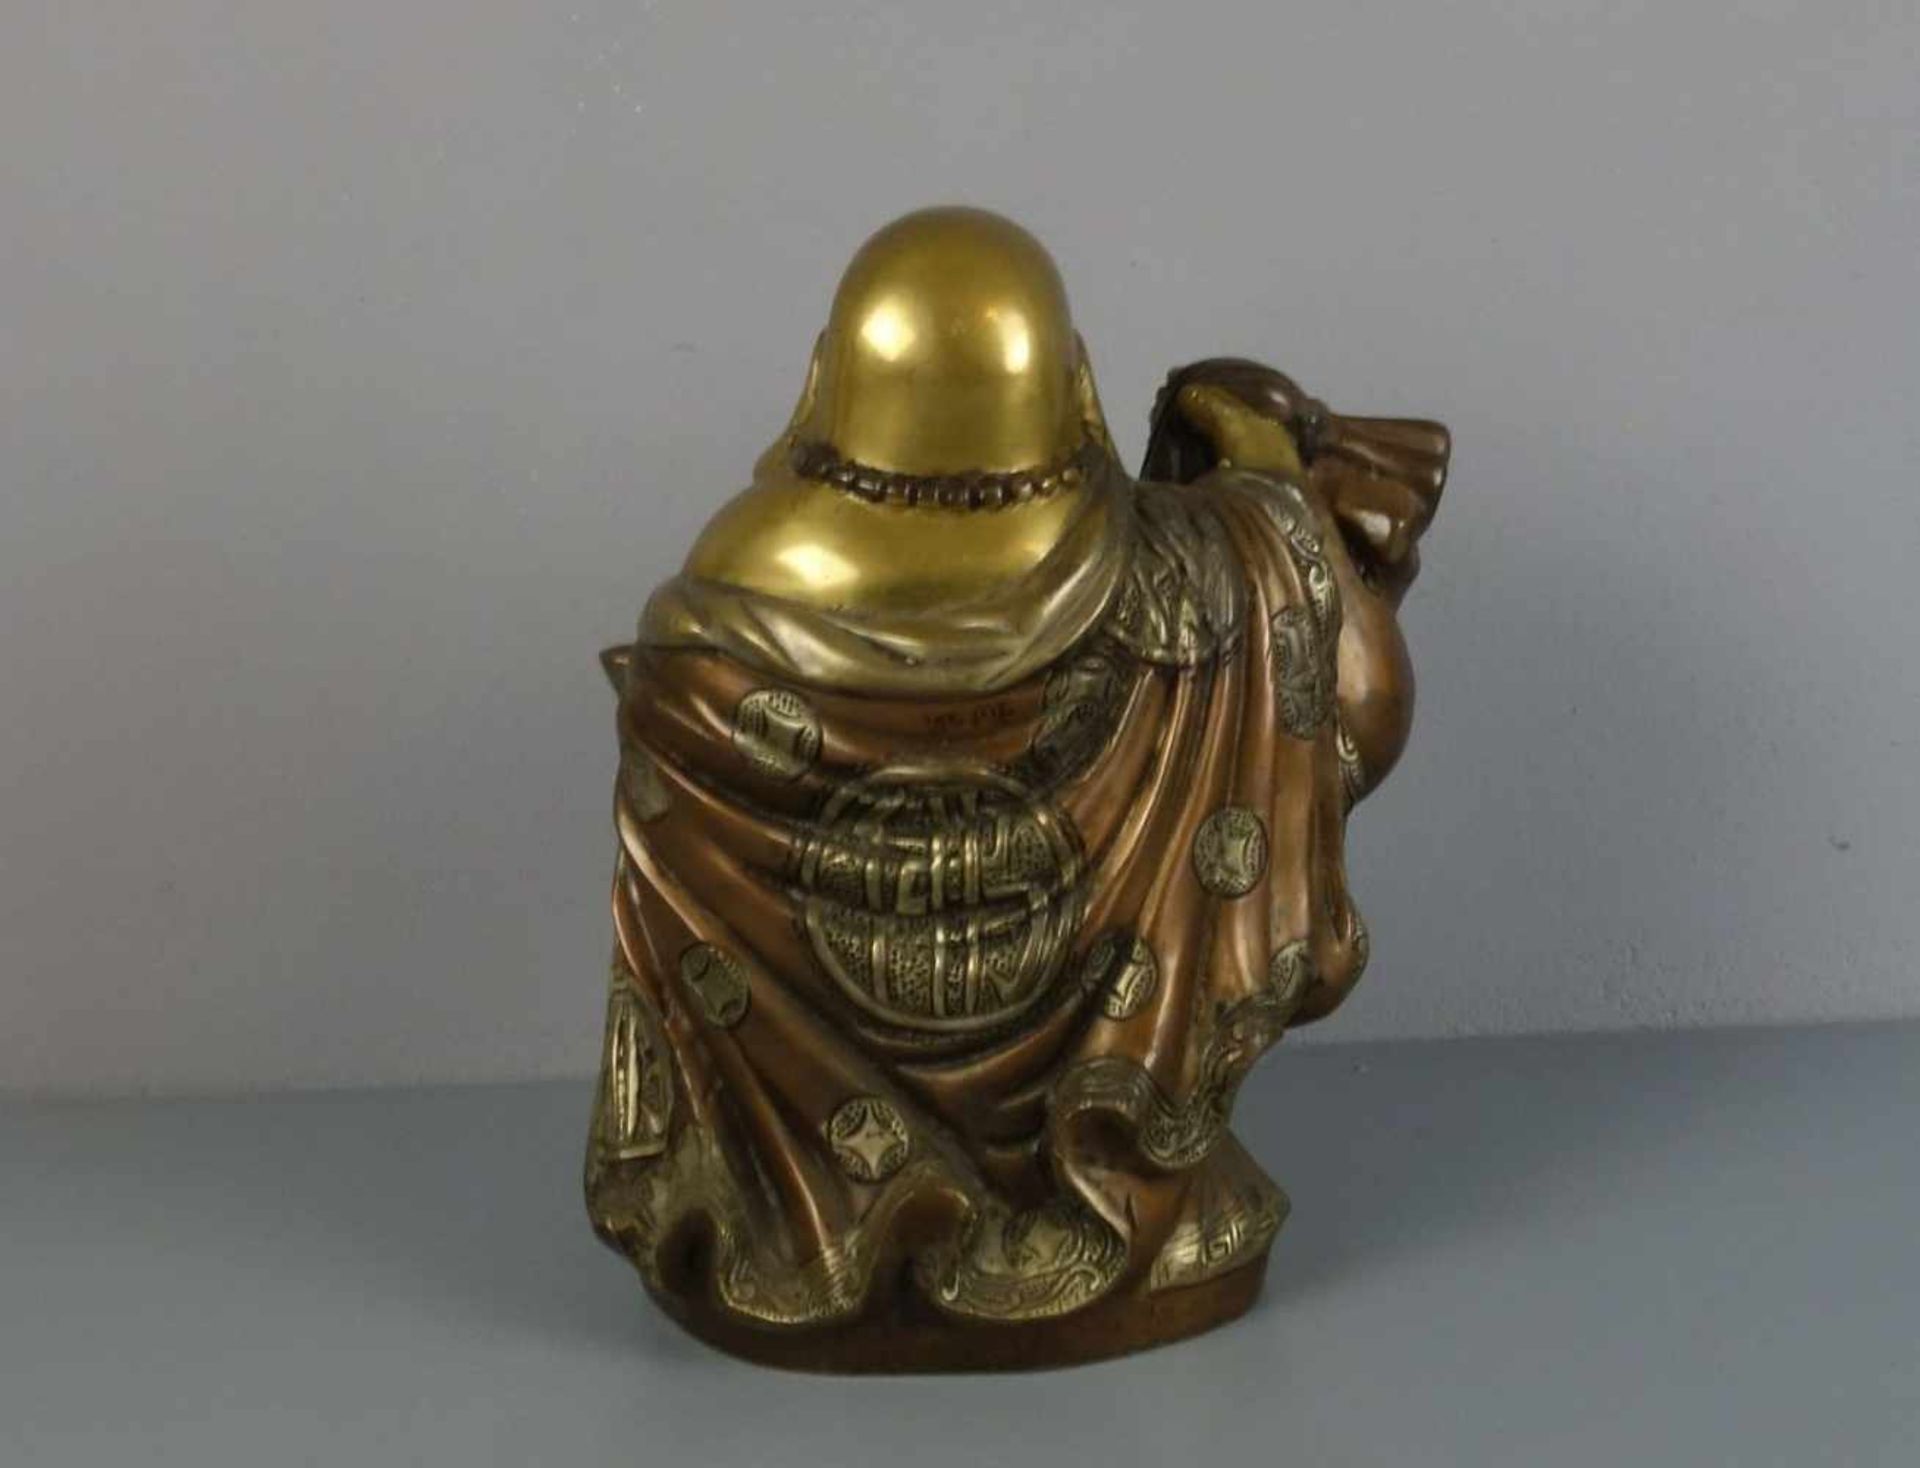 SKULPTUR: Buddha "Budai" / Glücksbuddha, Bronze, gold-, silber- und kupferfarben patiniert. Buddha - Bild 3 aus 5